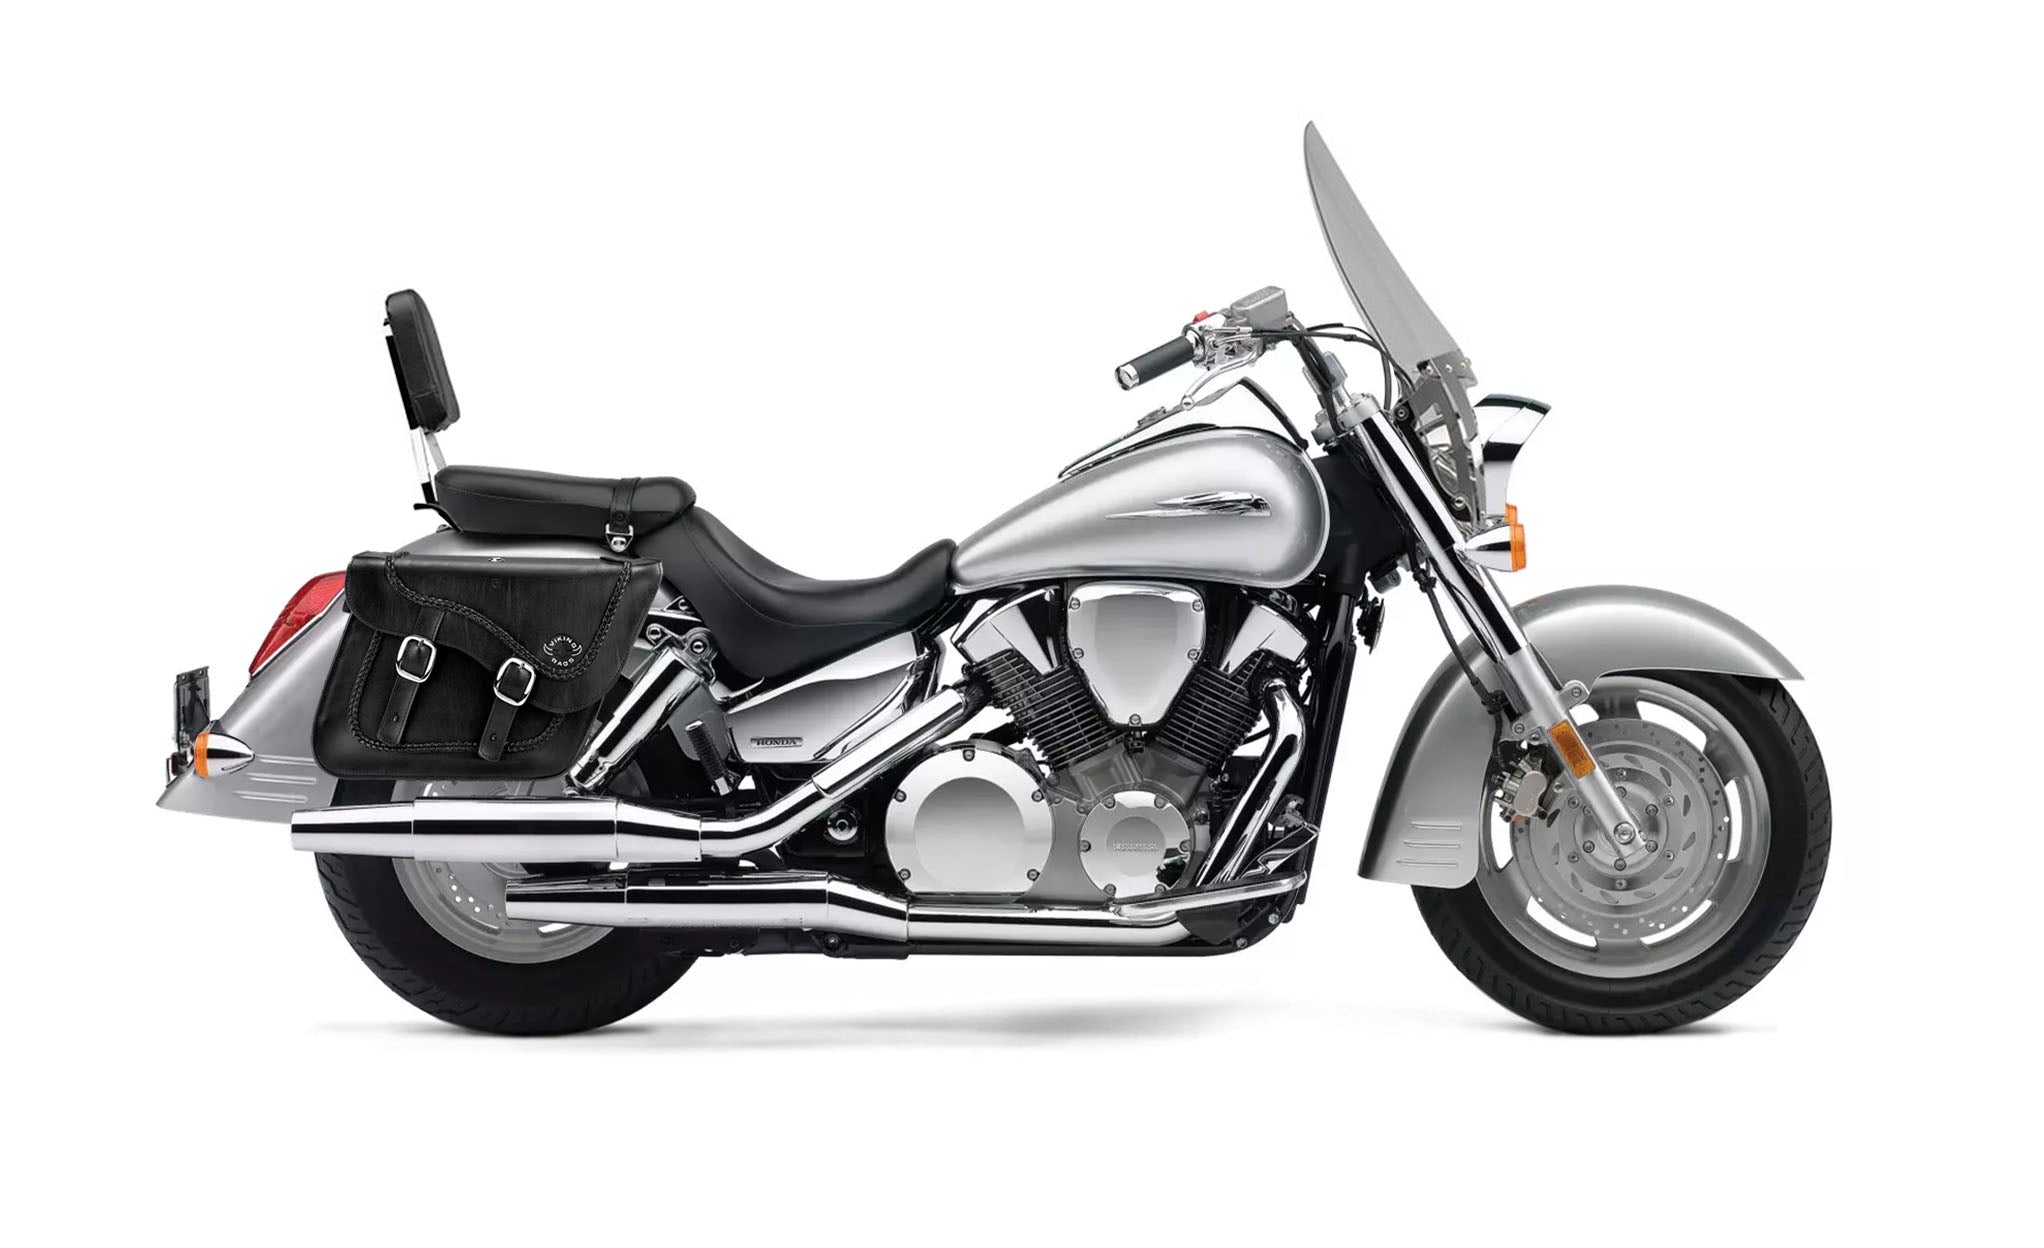 Viking Americano Honda Vtx 1300 T Tourer Braided Large Leather Motorcycle Saddlebags on Bike Photo @expand